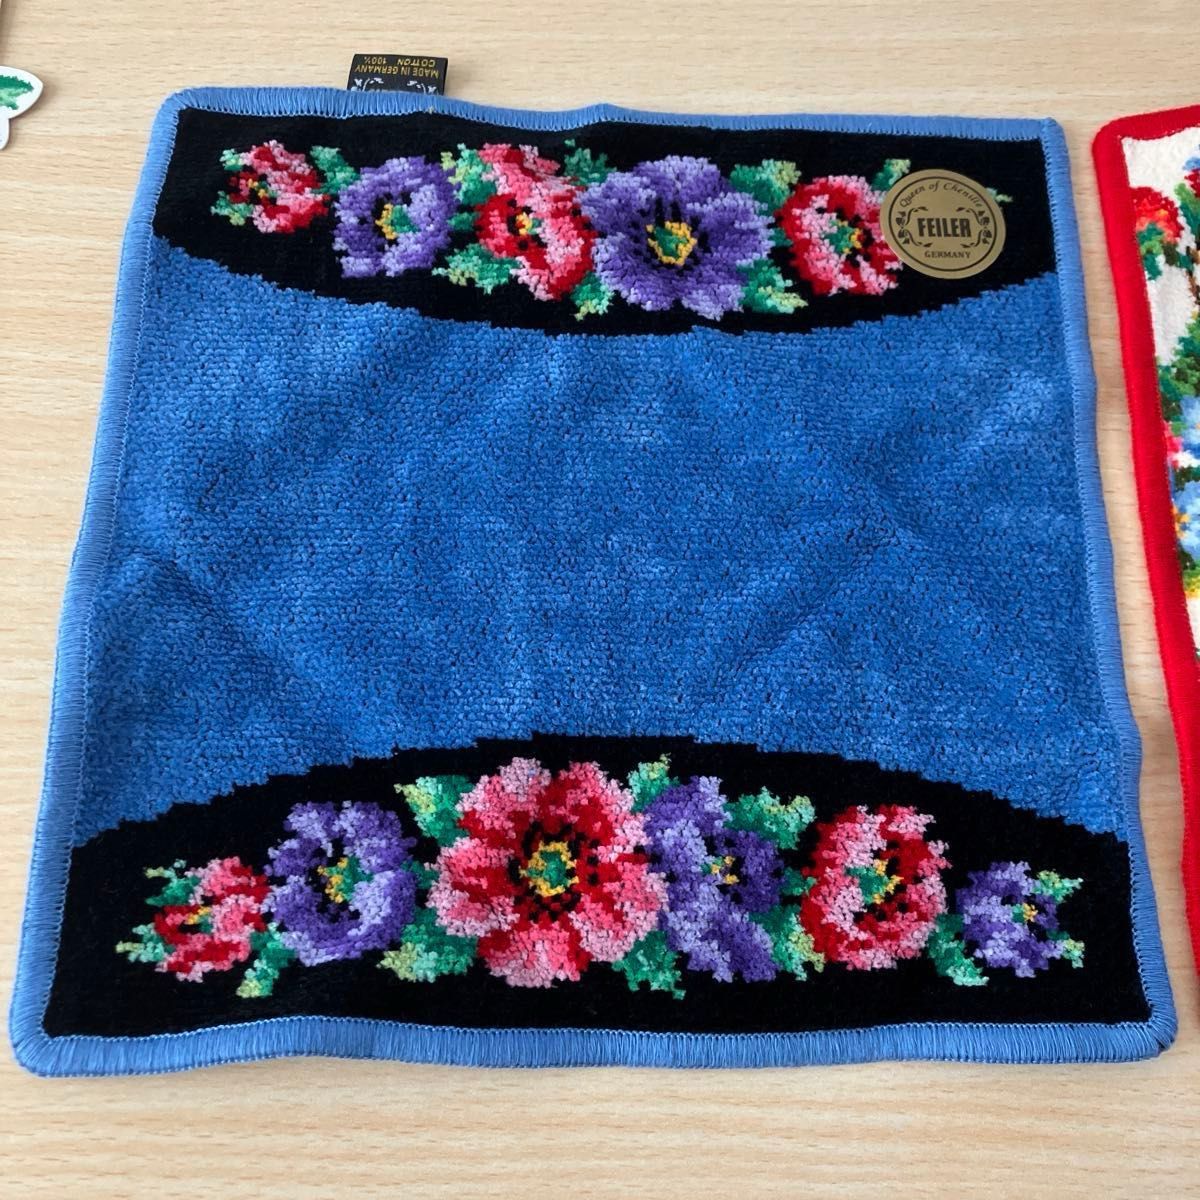 「新品未使用品」お箱入り・フェイラー・シェニール織り2枚セット(約24.5×25cm)